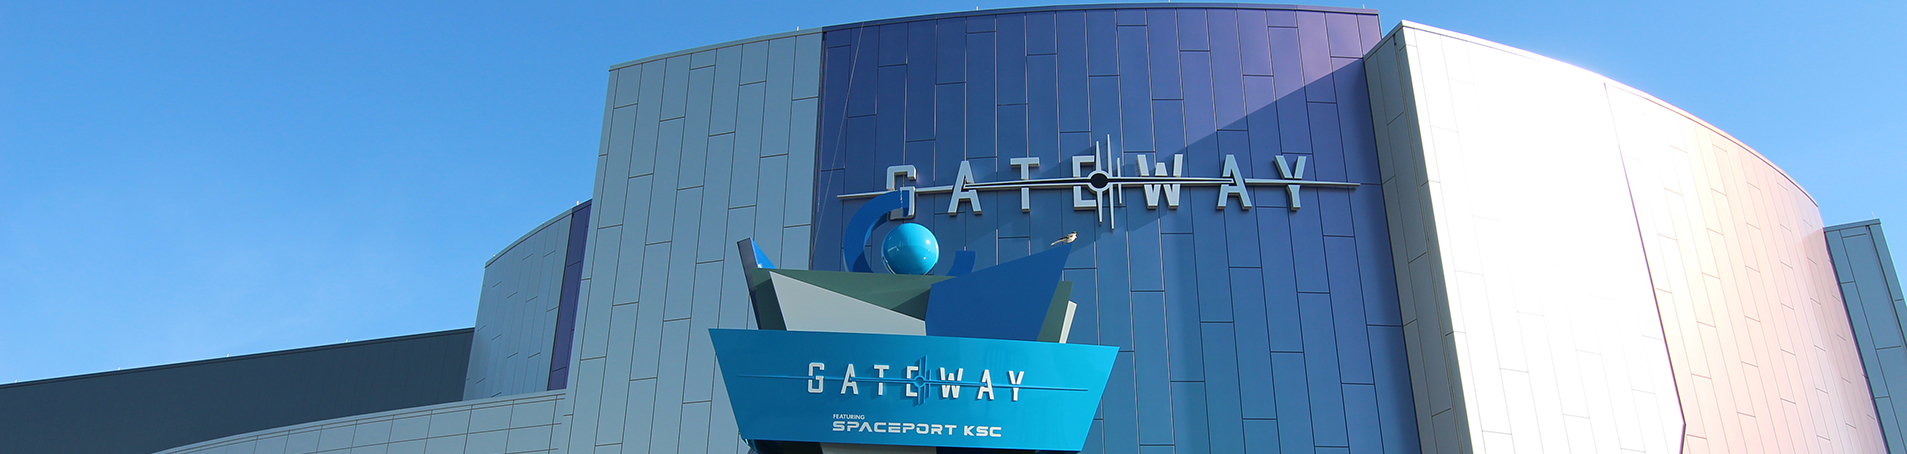 Gateway Exterior